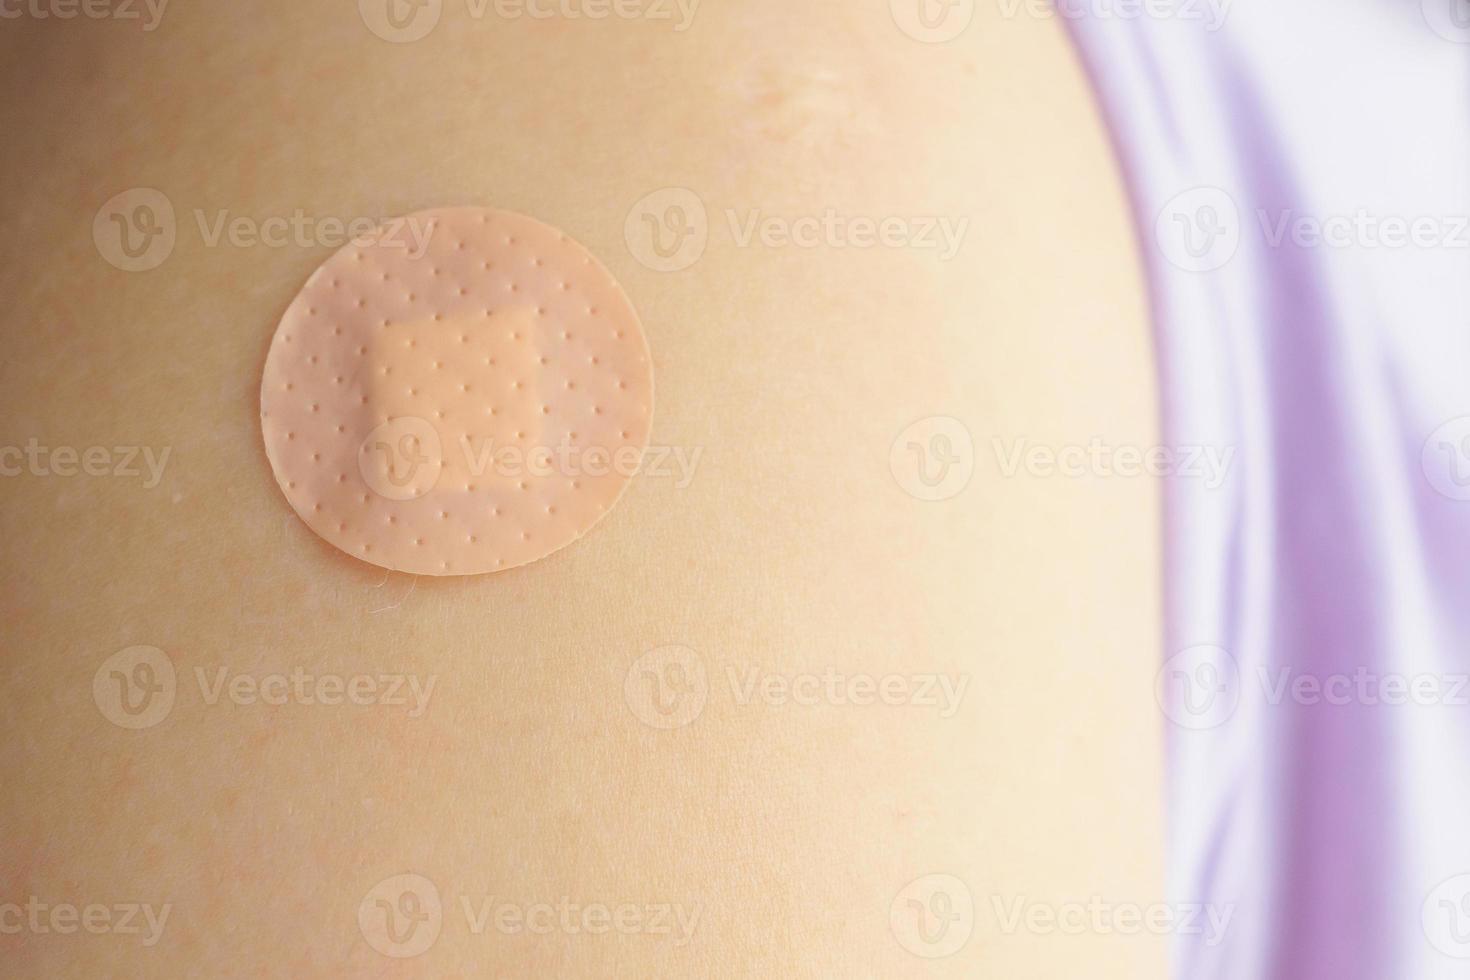 cerrar el vendaje adhesivo marrón circular en el brazo del paciente después de la inyección o vacunación del medicamento foto